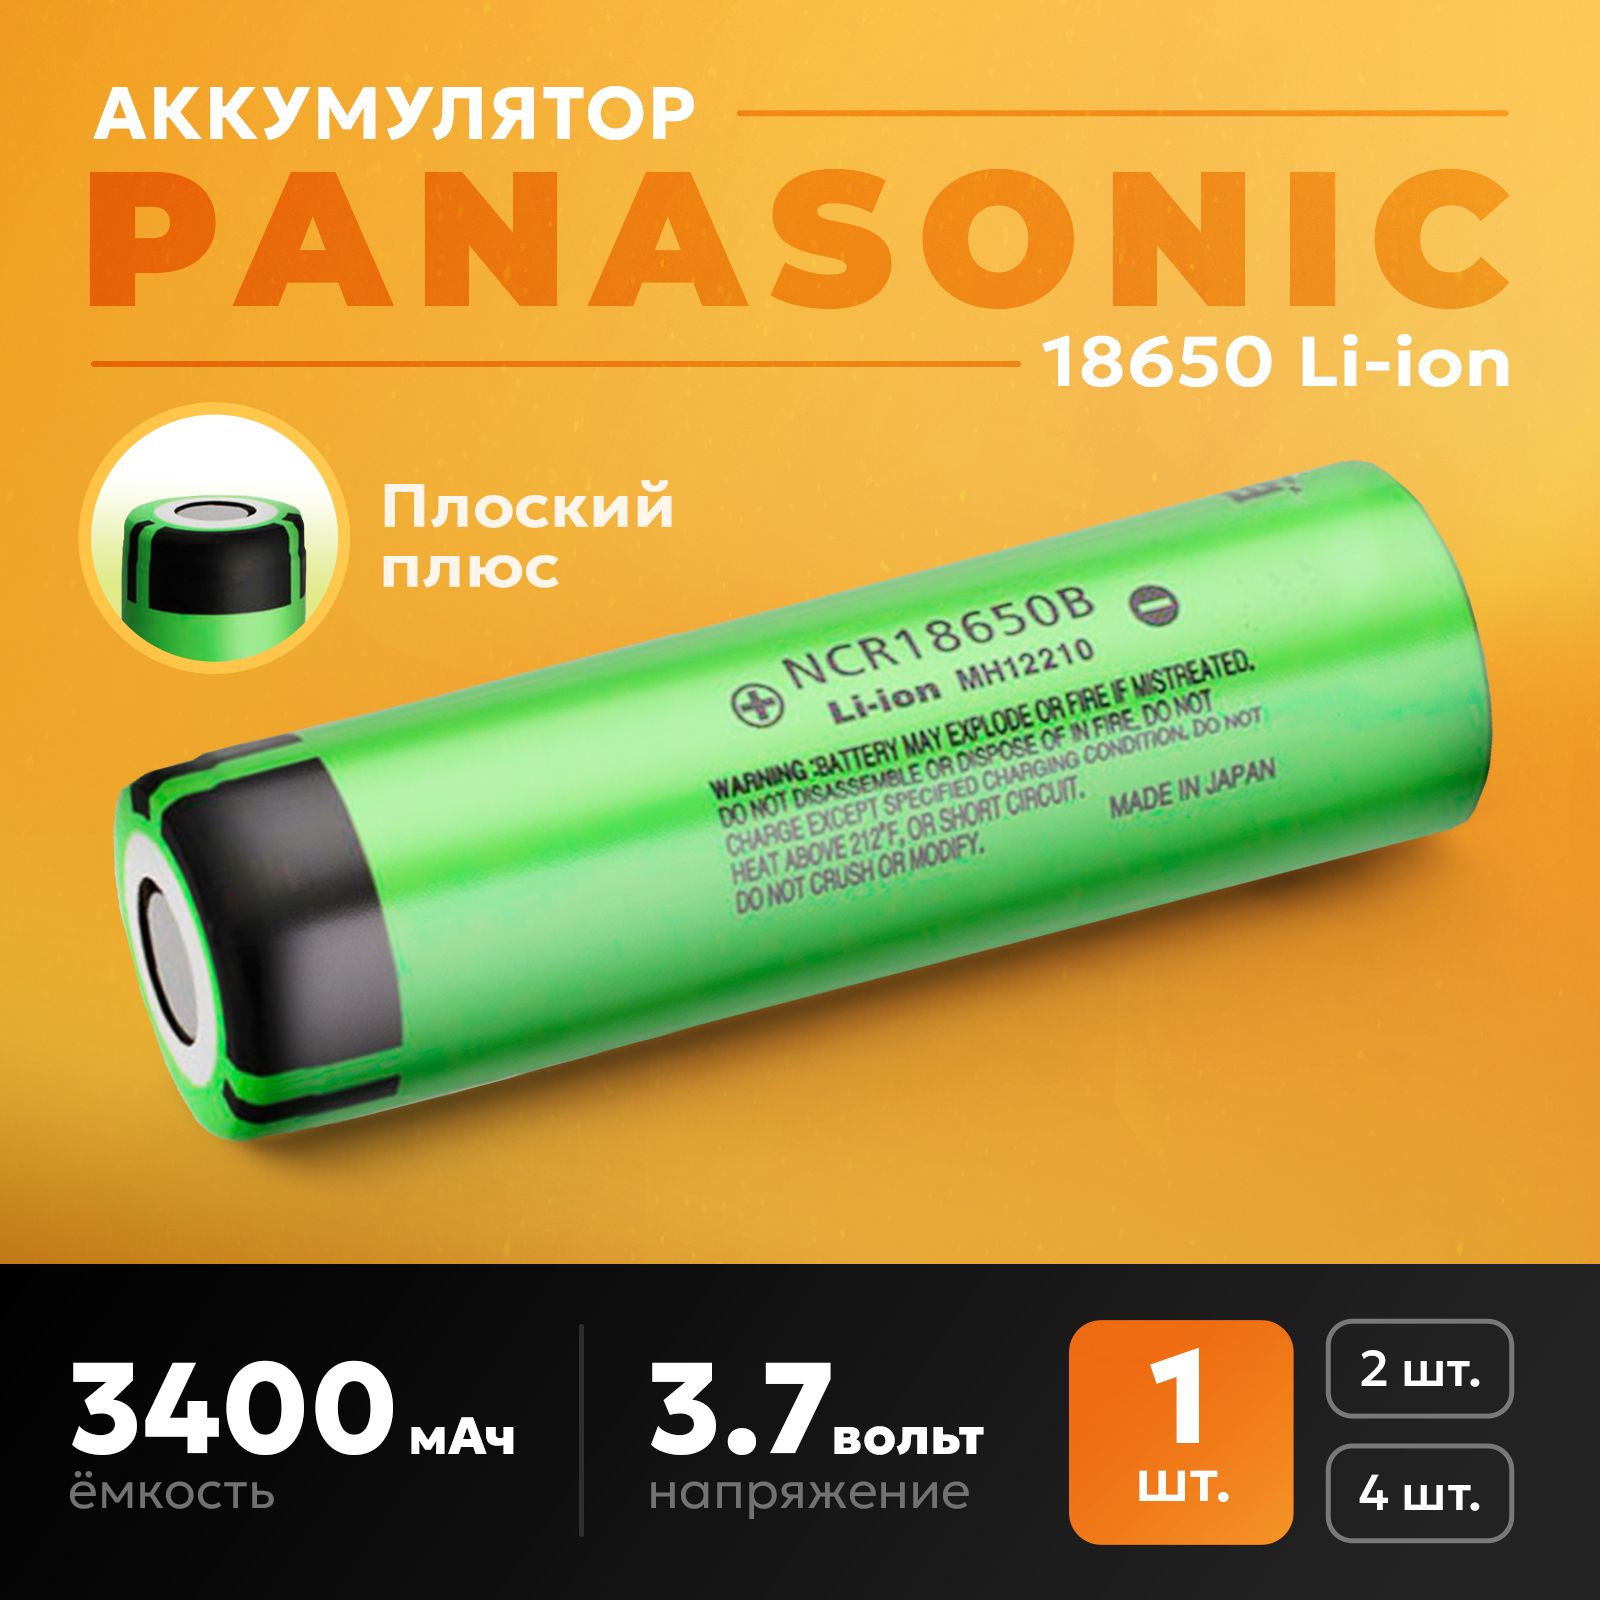 PanasonicАккумуляторнаябатарейка18650,4,35В,3400мАч,1шт